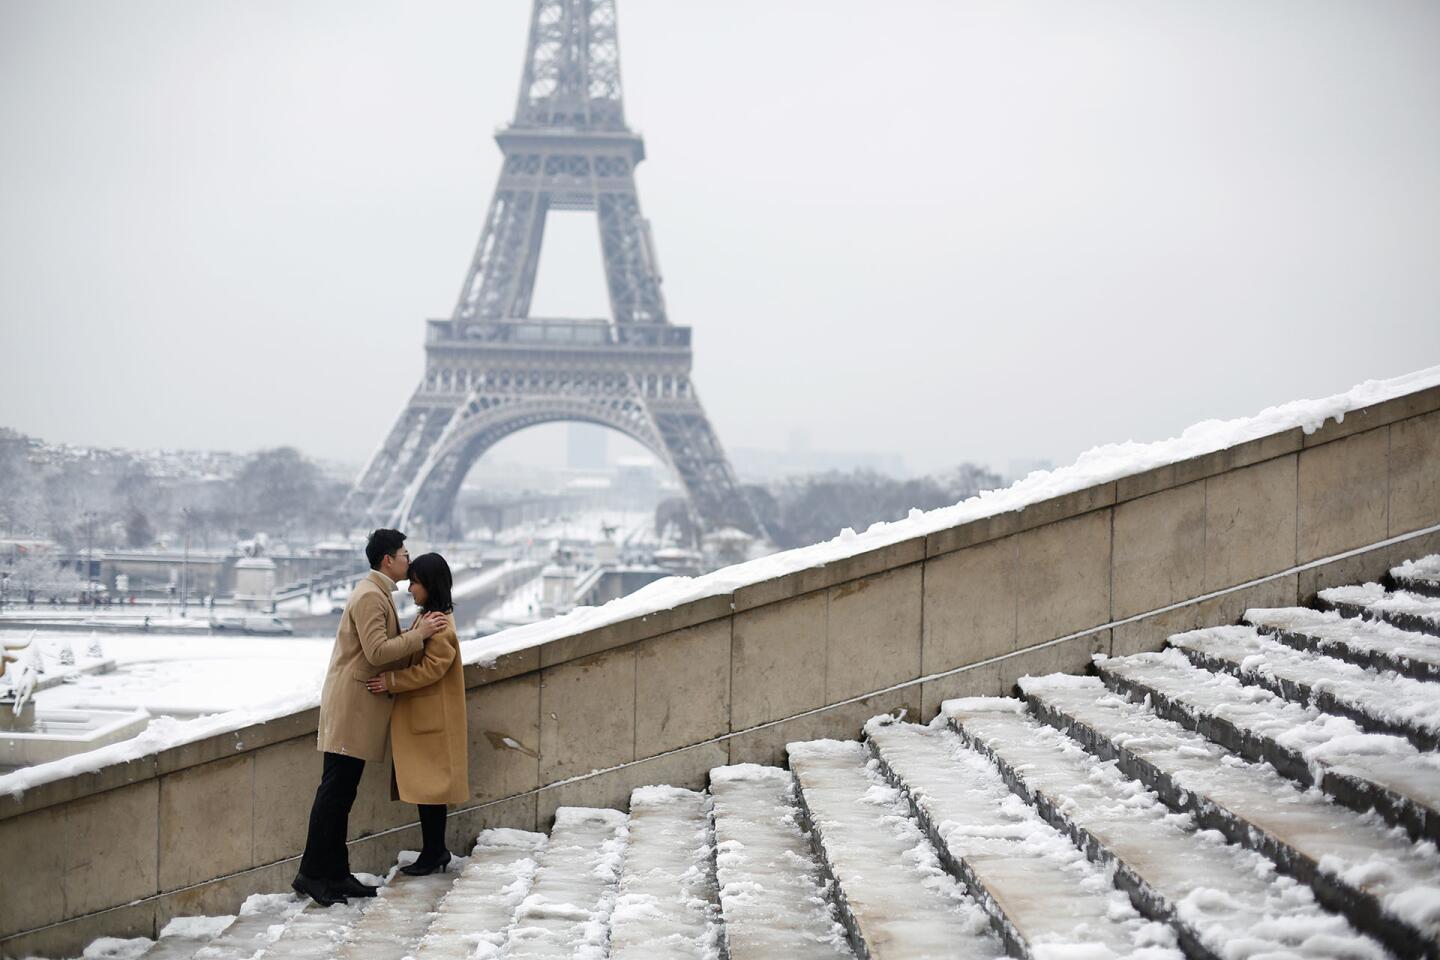 Una pareja de turistas se besa frente a la Torre Eiffel, cerrada por mal clima. Los visitantes tuvieron que conformarse con ver la torre de hierro blanqueada por nieve desde los jardines cercanos al monumento en París.